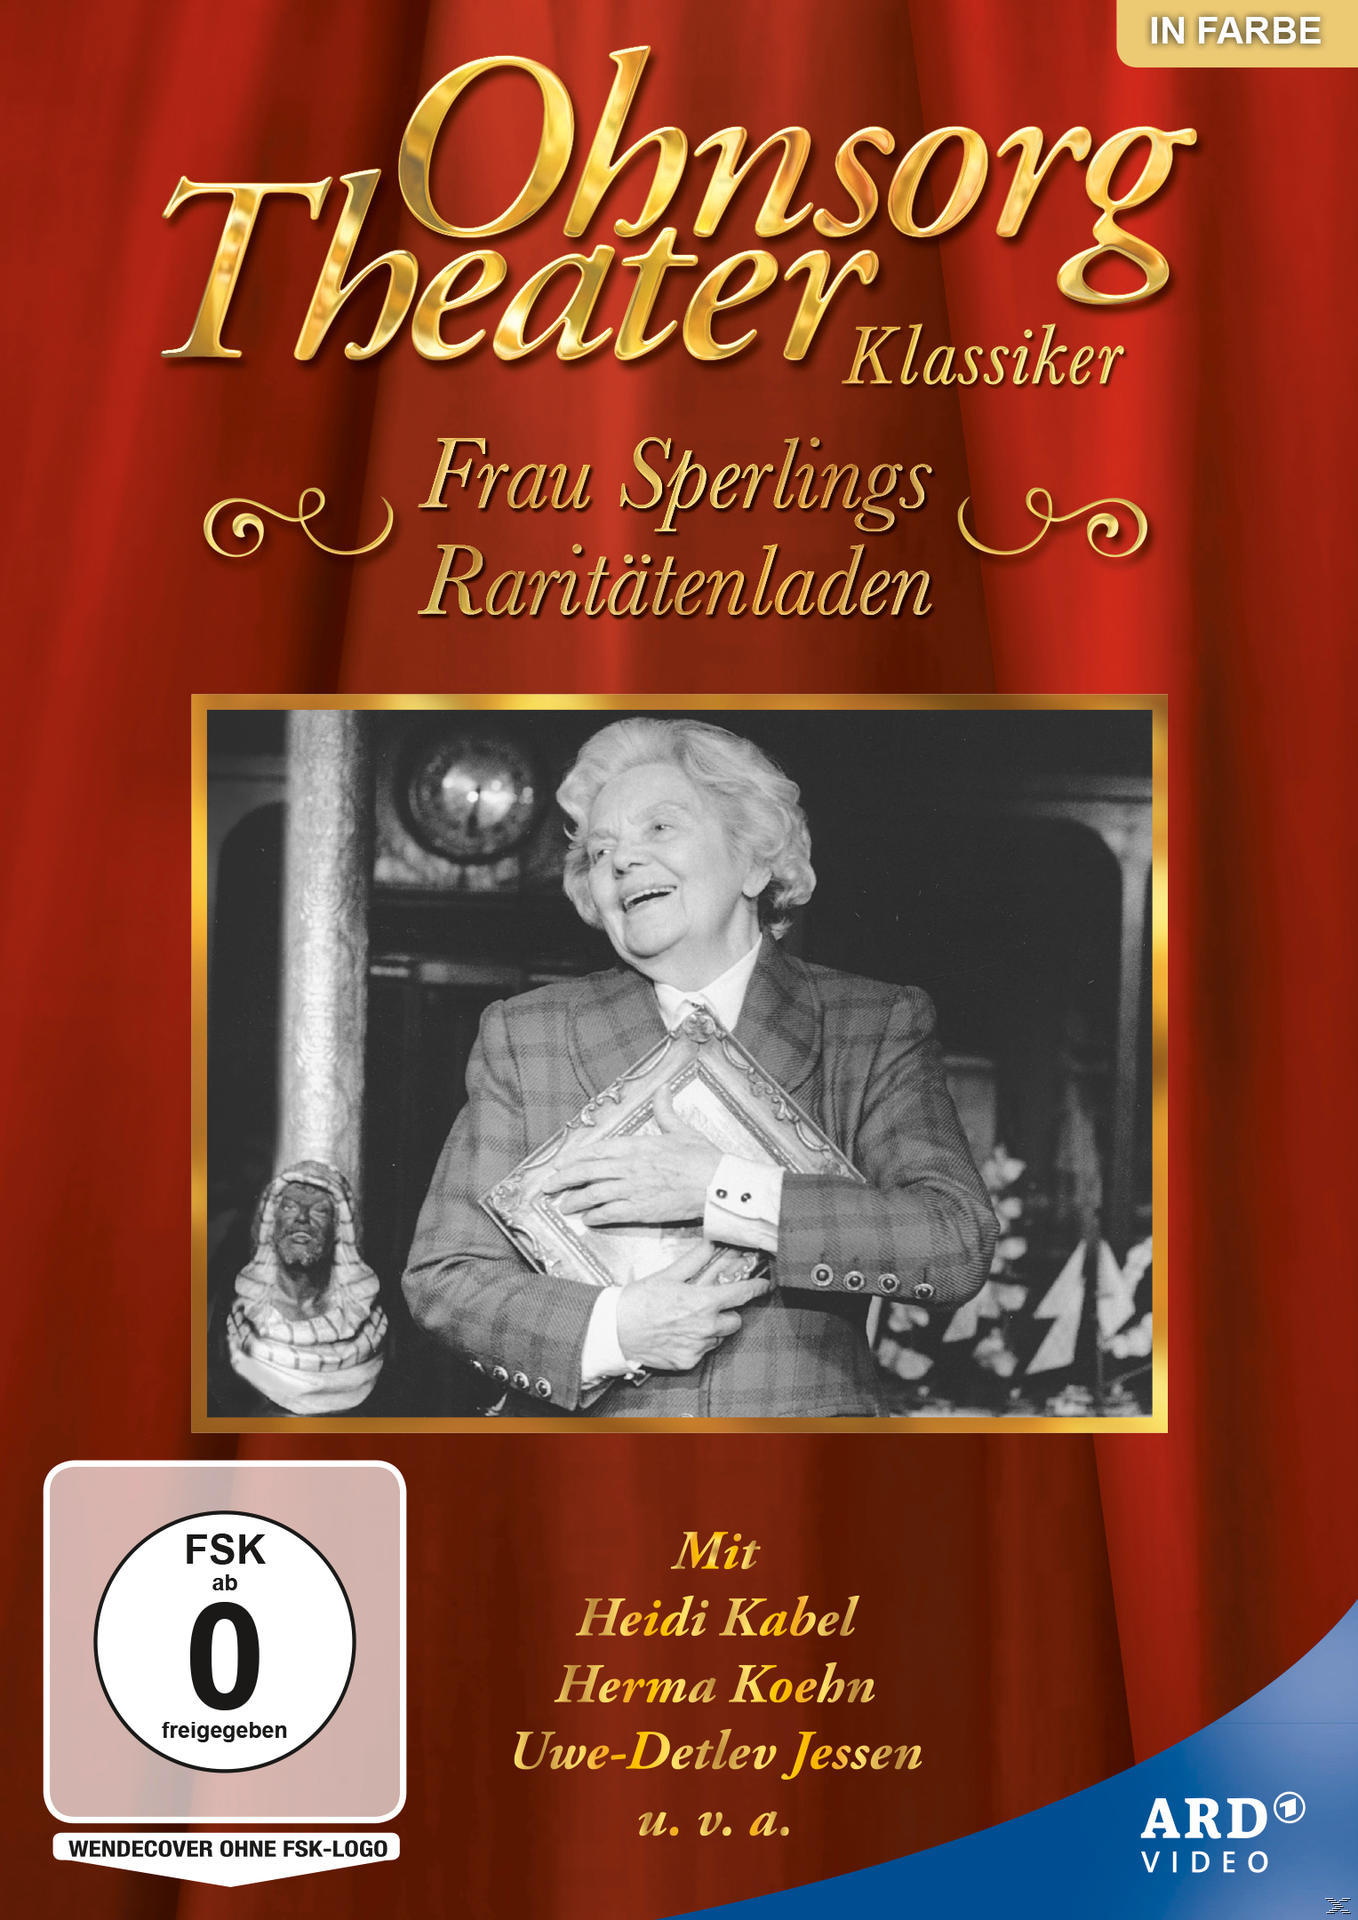 Raritätenladen DVD Klassiker: Frau Theater Ohnsorg Sperlings